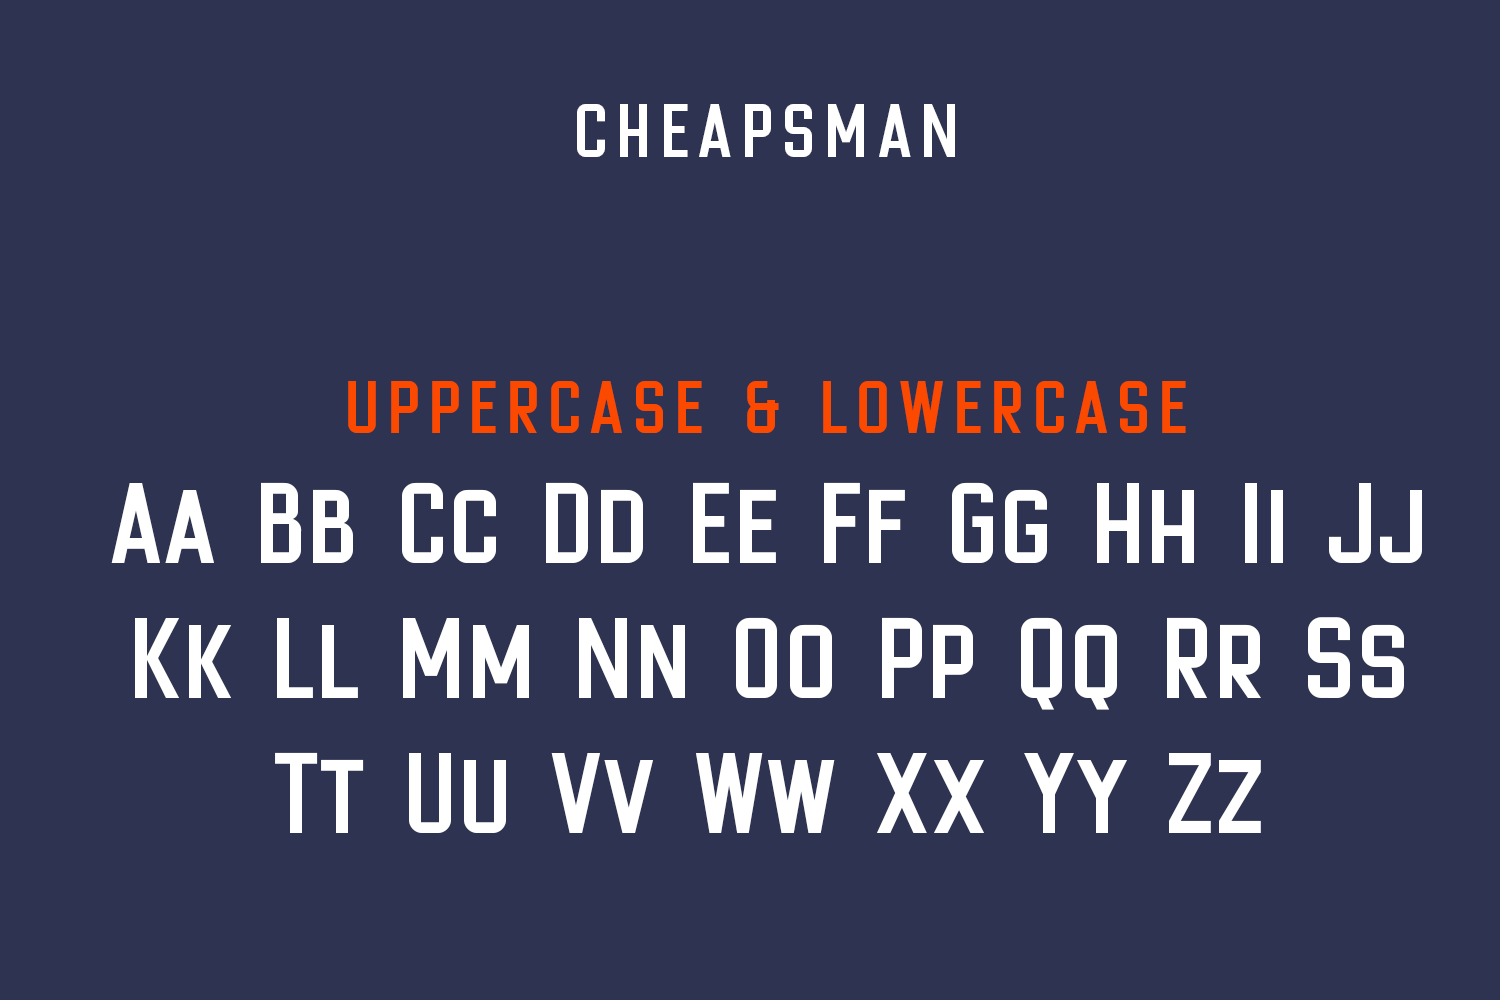 Cheapsman Sans Serif Display